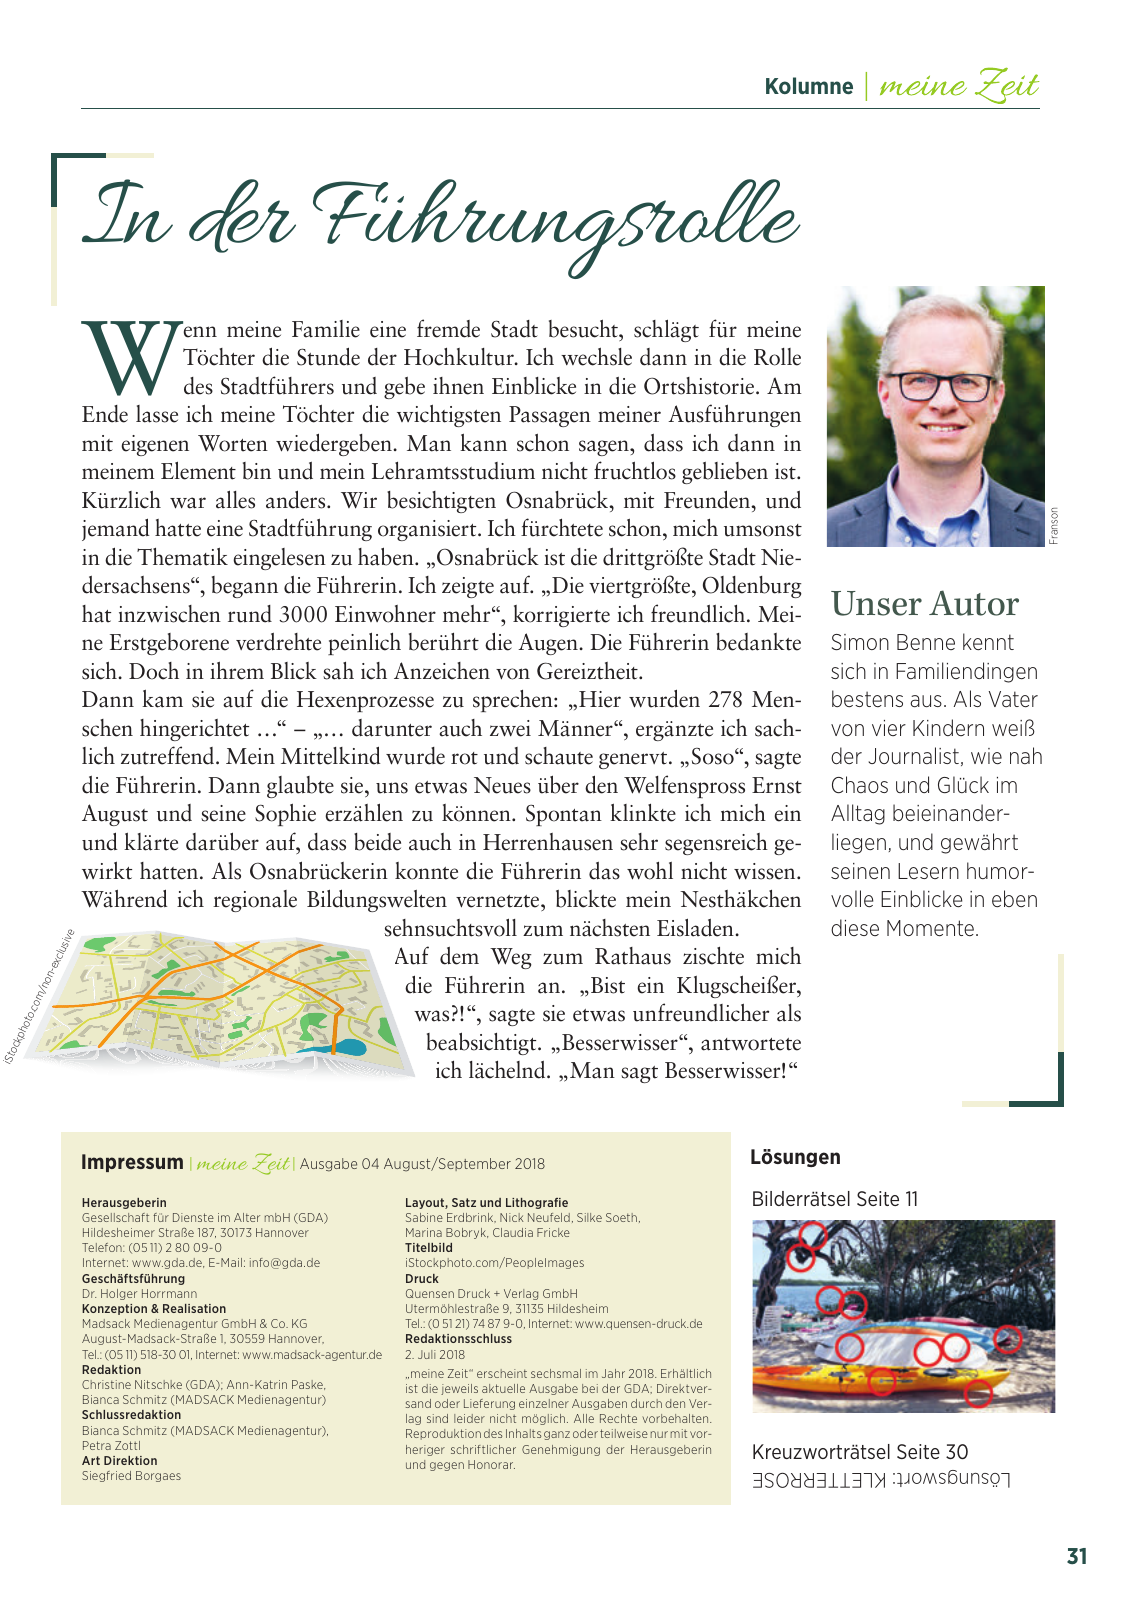 Vorschau 2018_GDA04_Neustadt Seite 31